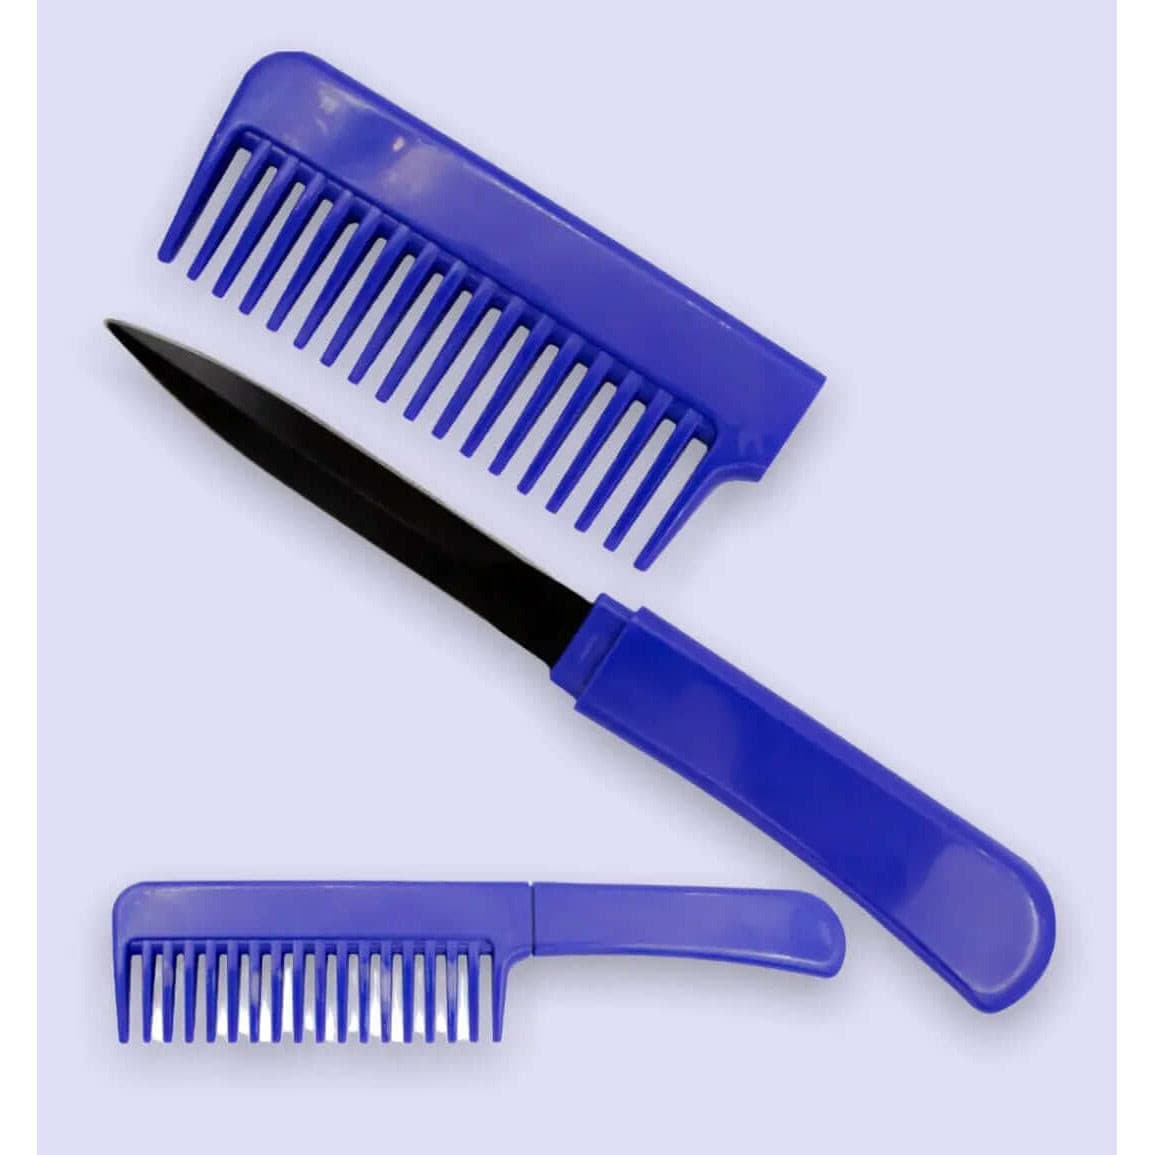 Blue Comb knife